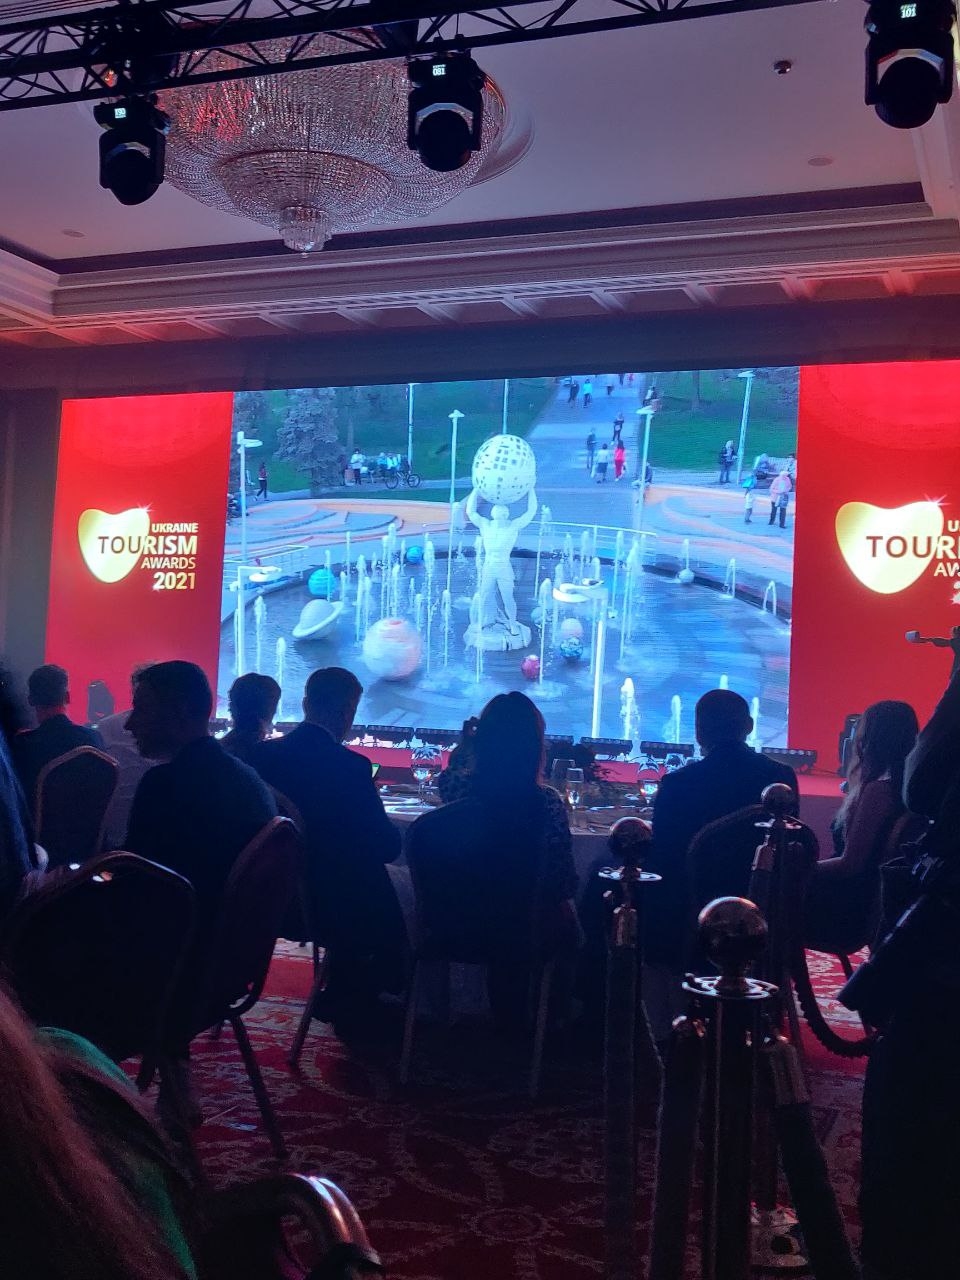 Вінниця перемогла у головній туристичній премії країни Ukraine Tourism Awards 2021